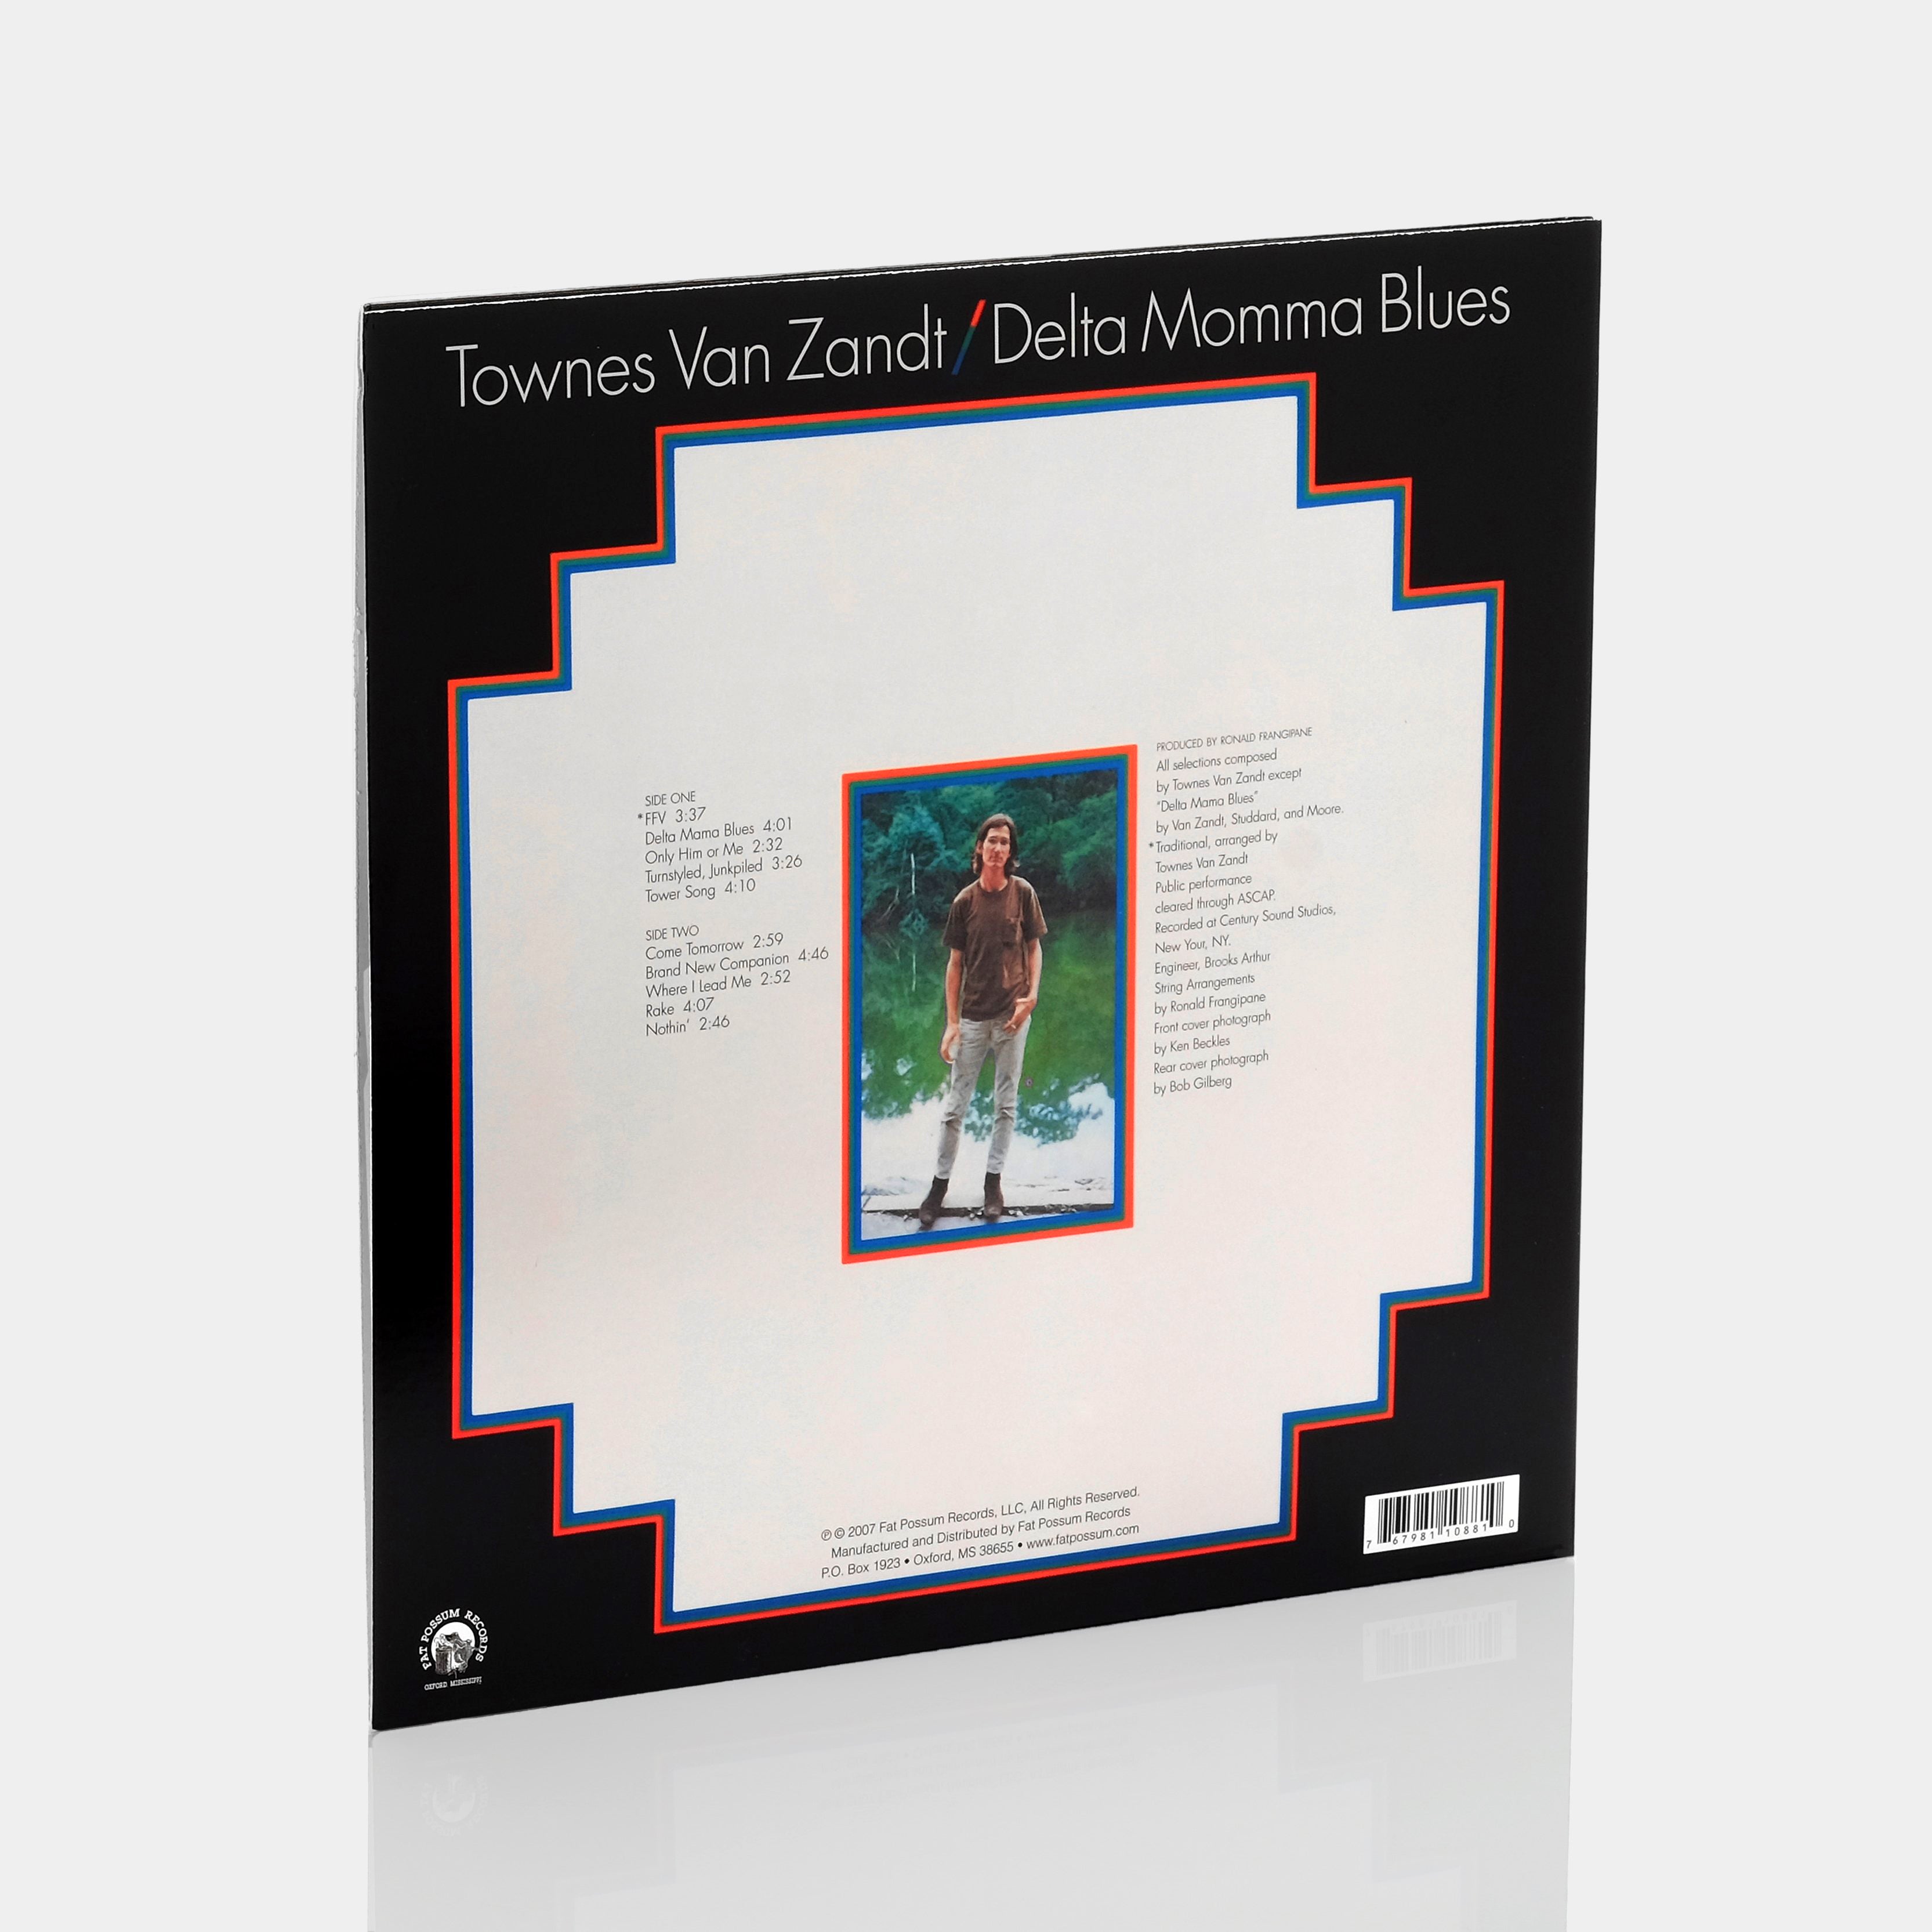 Townes Van Zandt - Delta Momma Blues LP Vinyl Record